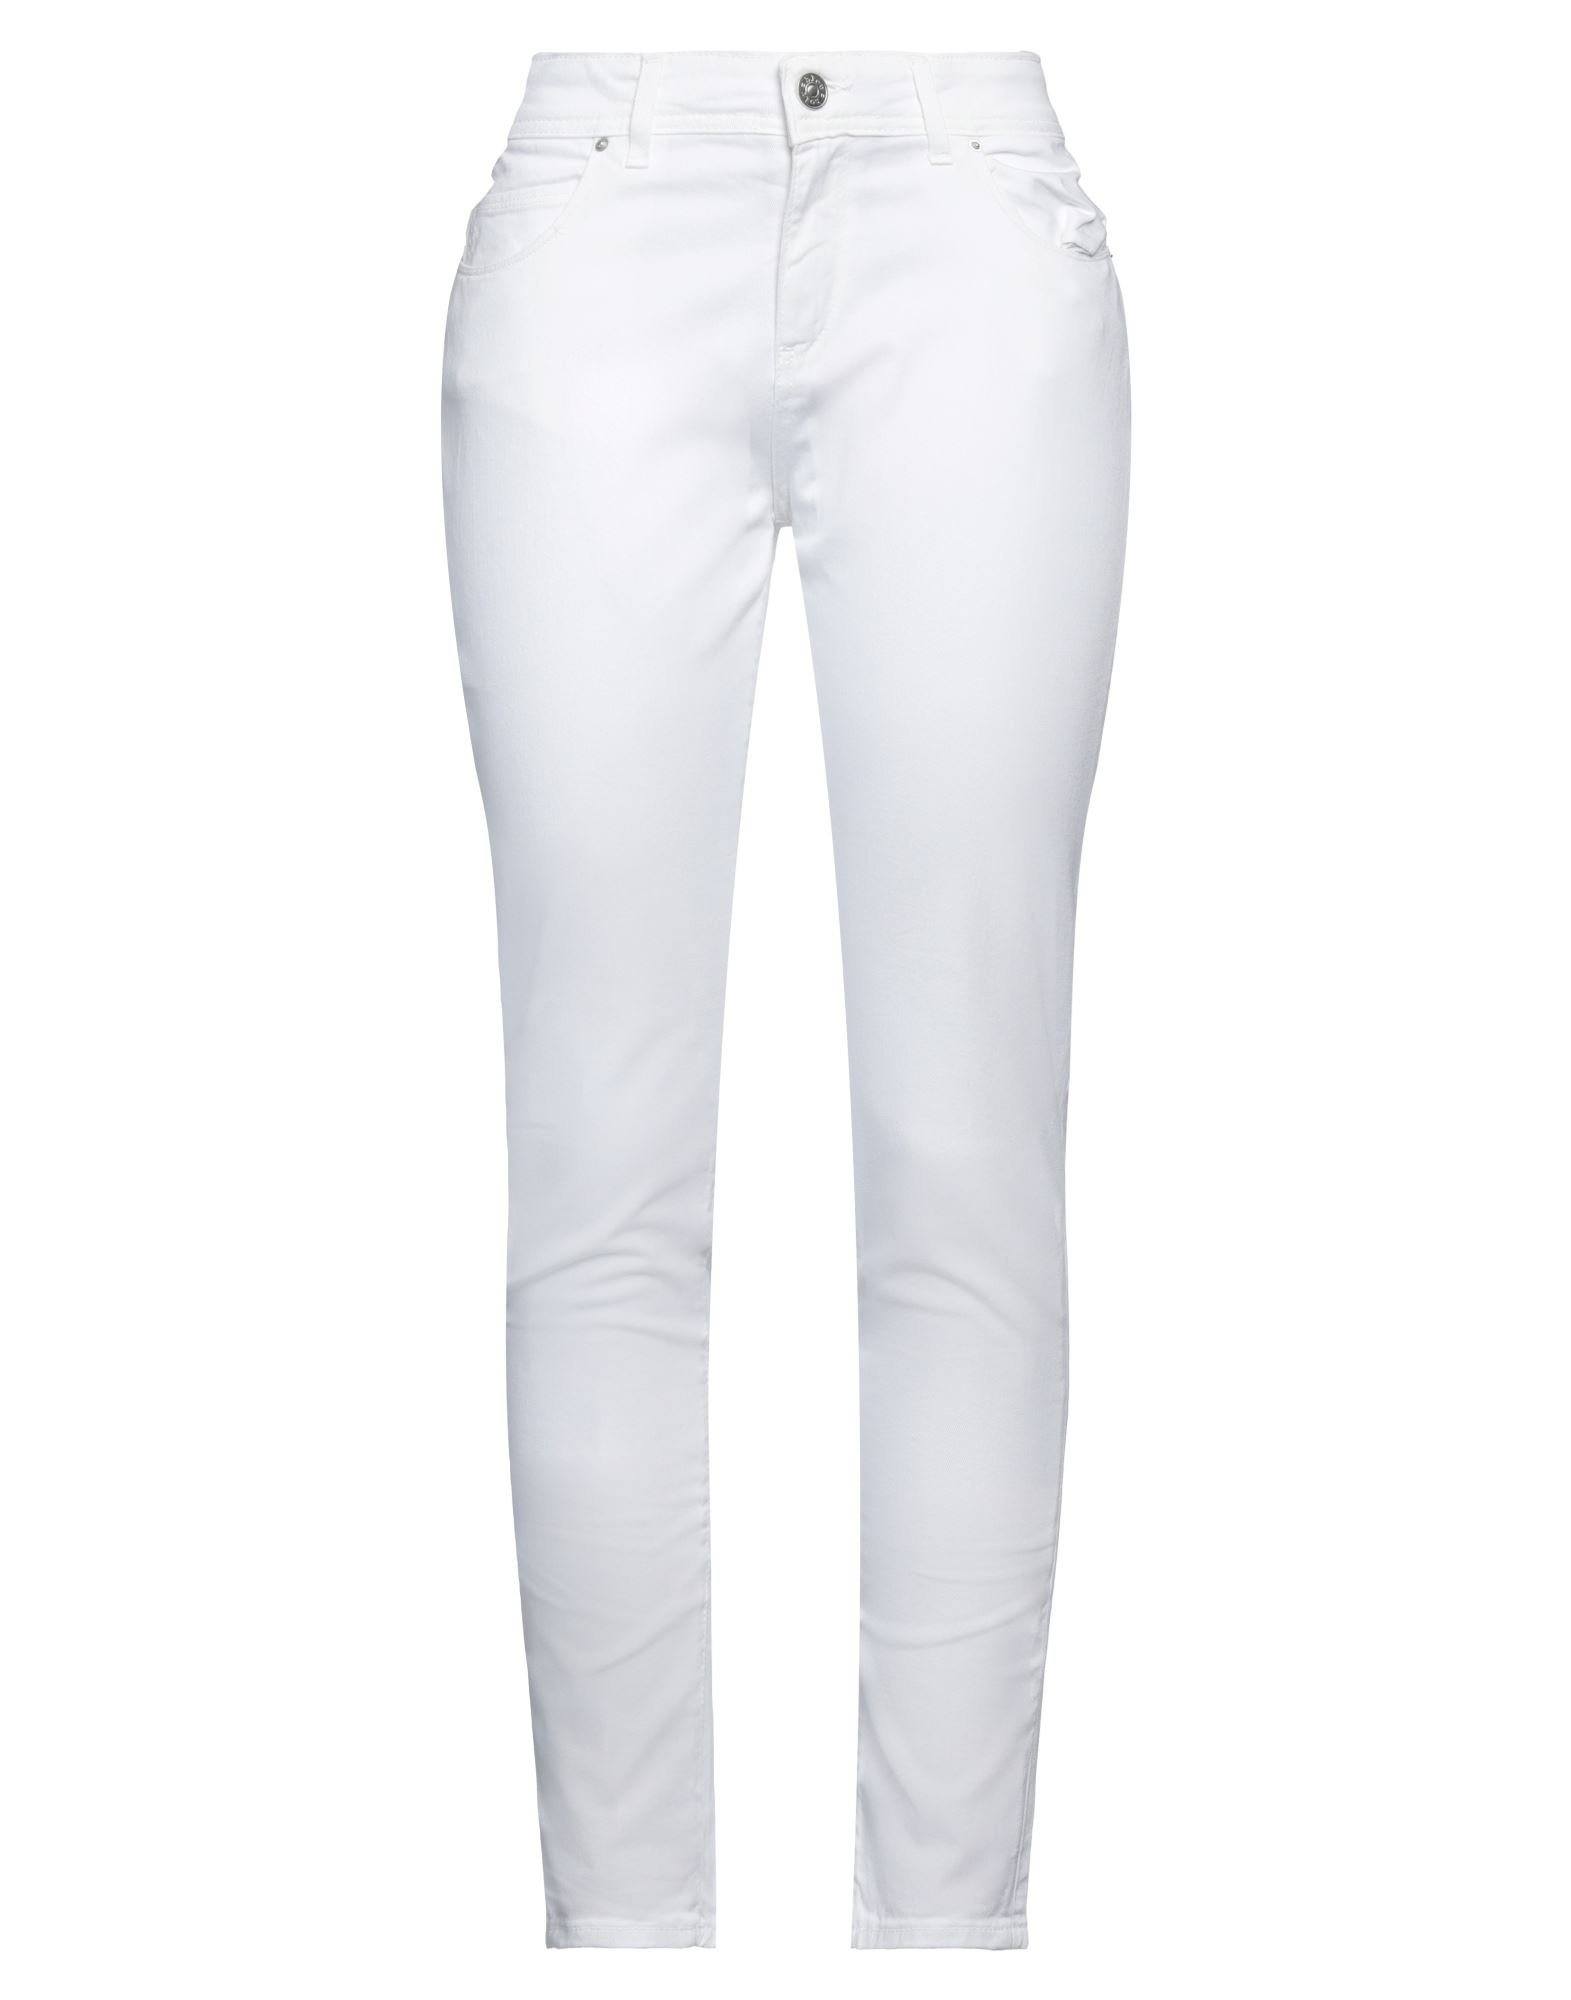 Noir'n'bleu Woman Jeans White Size 28 Cotton, Elastane